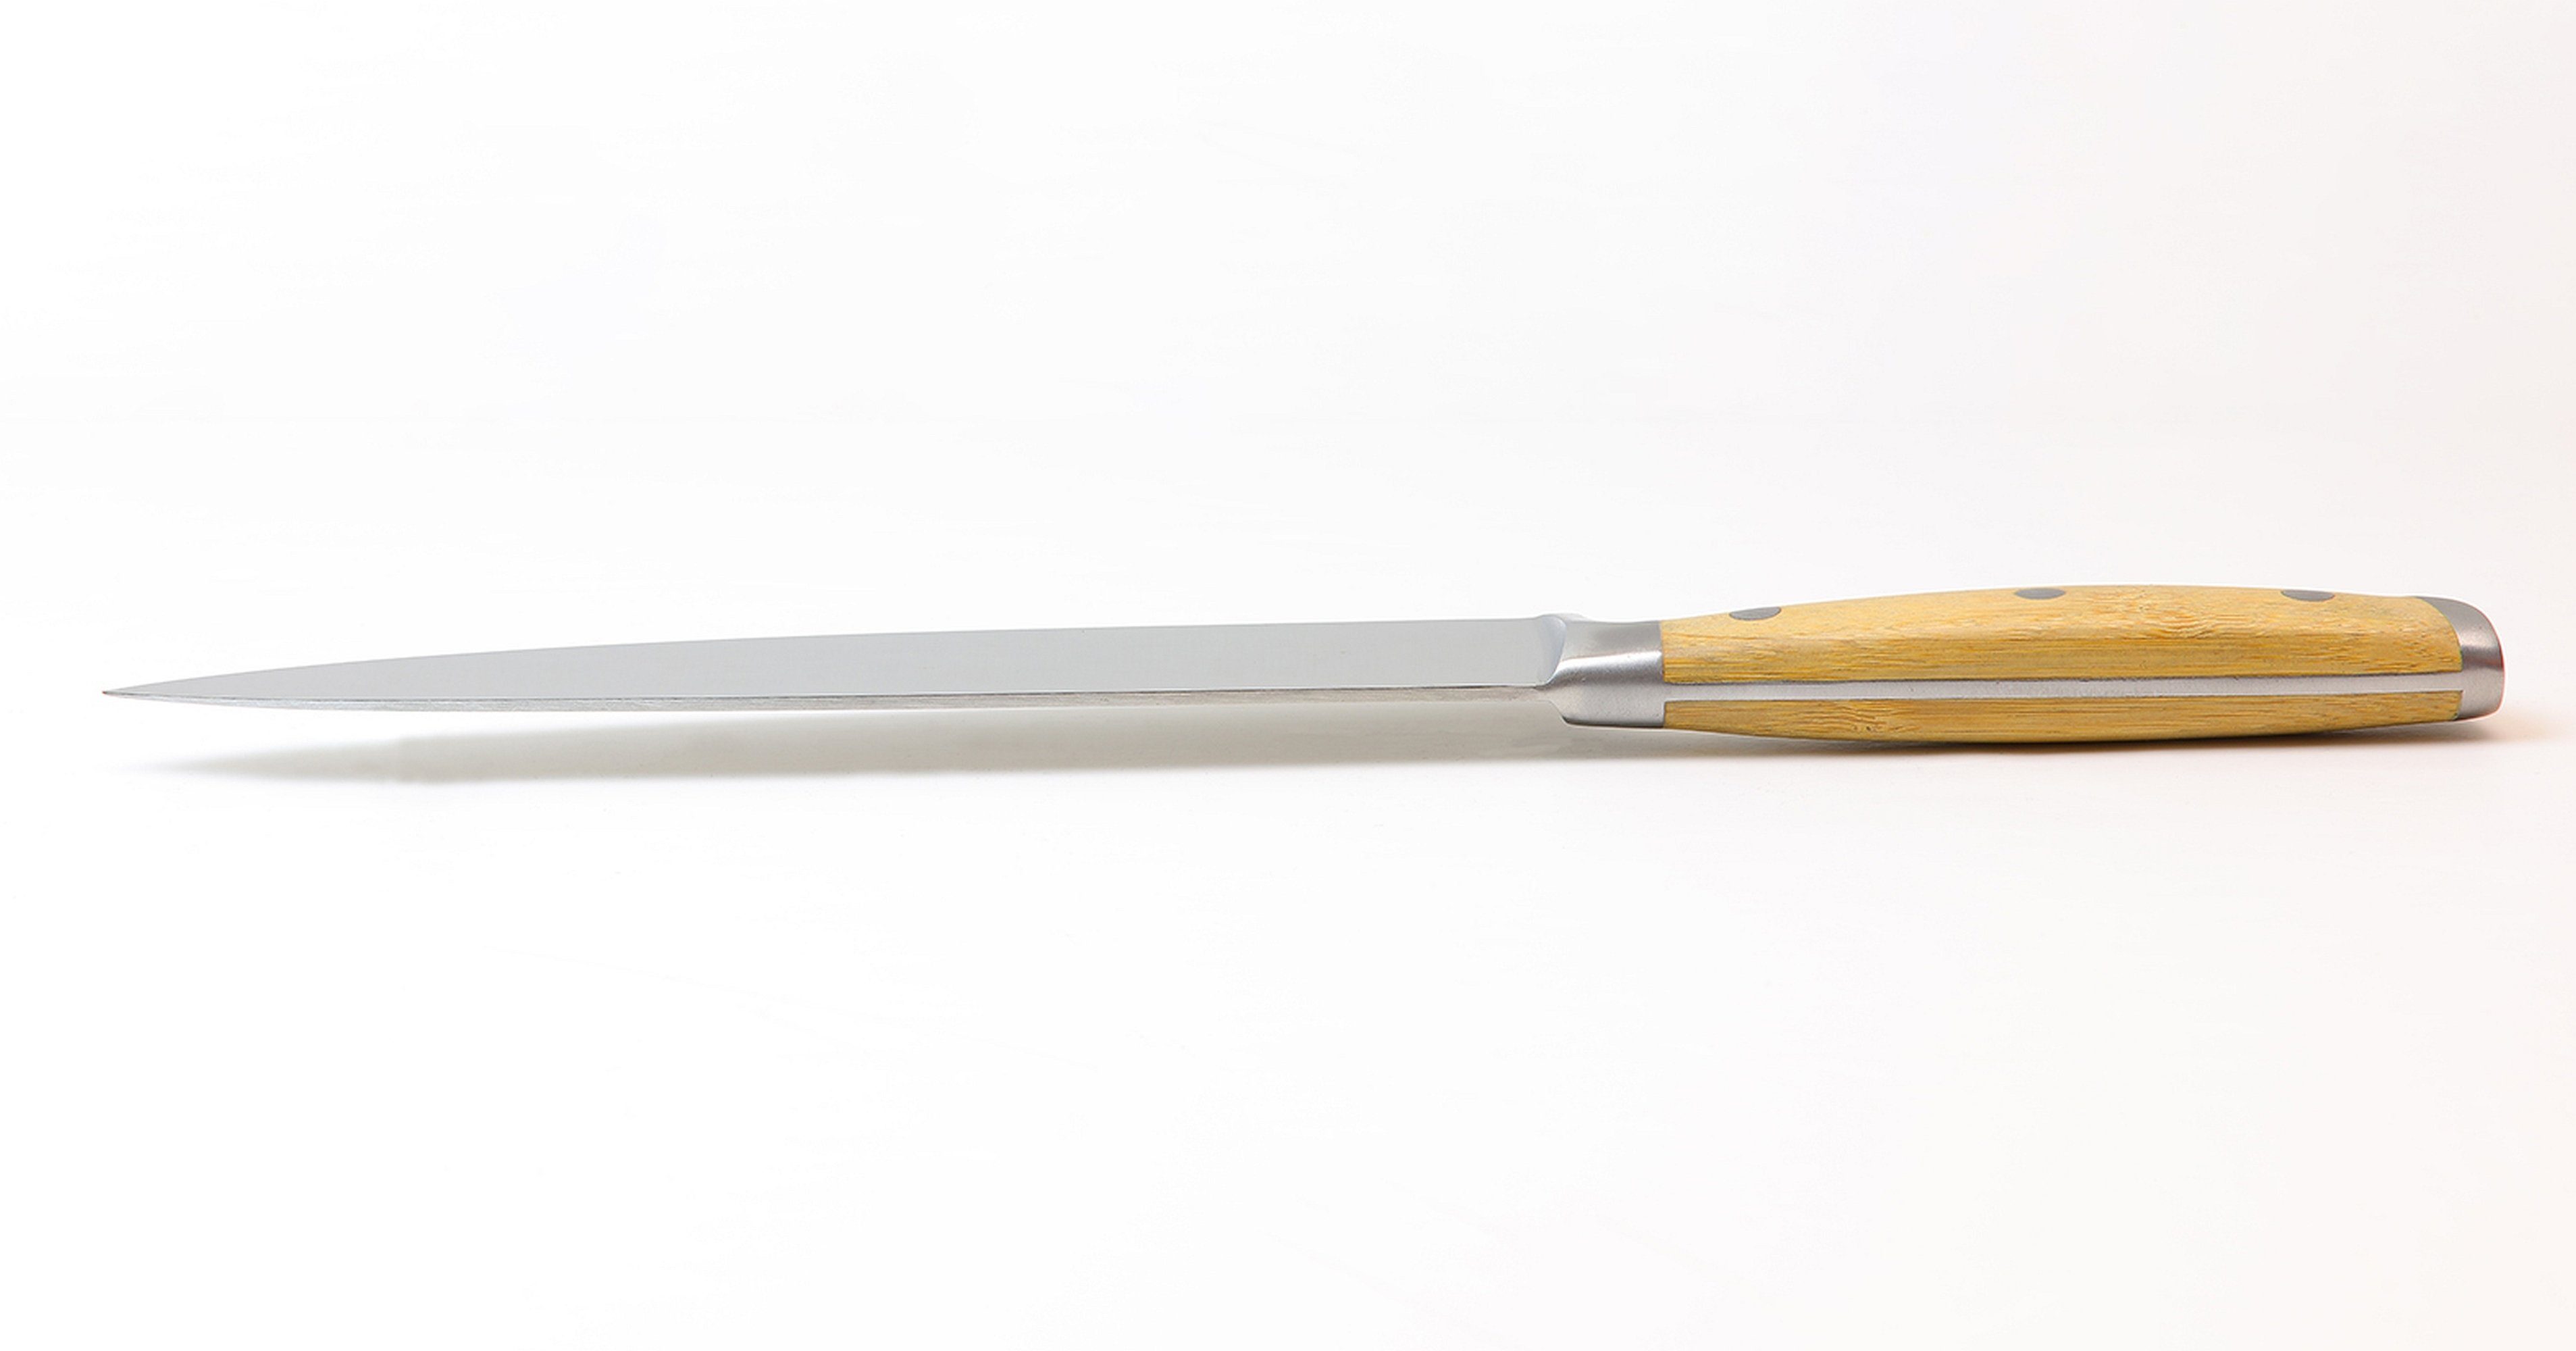 Westinghouse Fleischmesser Klingenlänge 20 cm, Edelstahlklinge Bambusgriff, 2,5 Klingenstärke mm